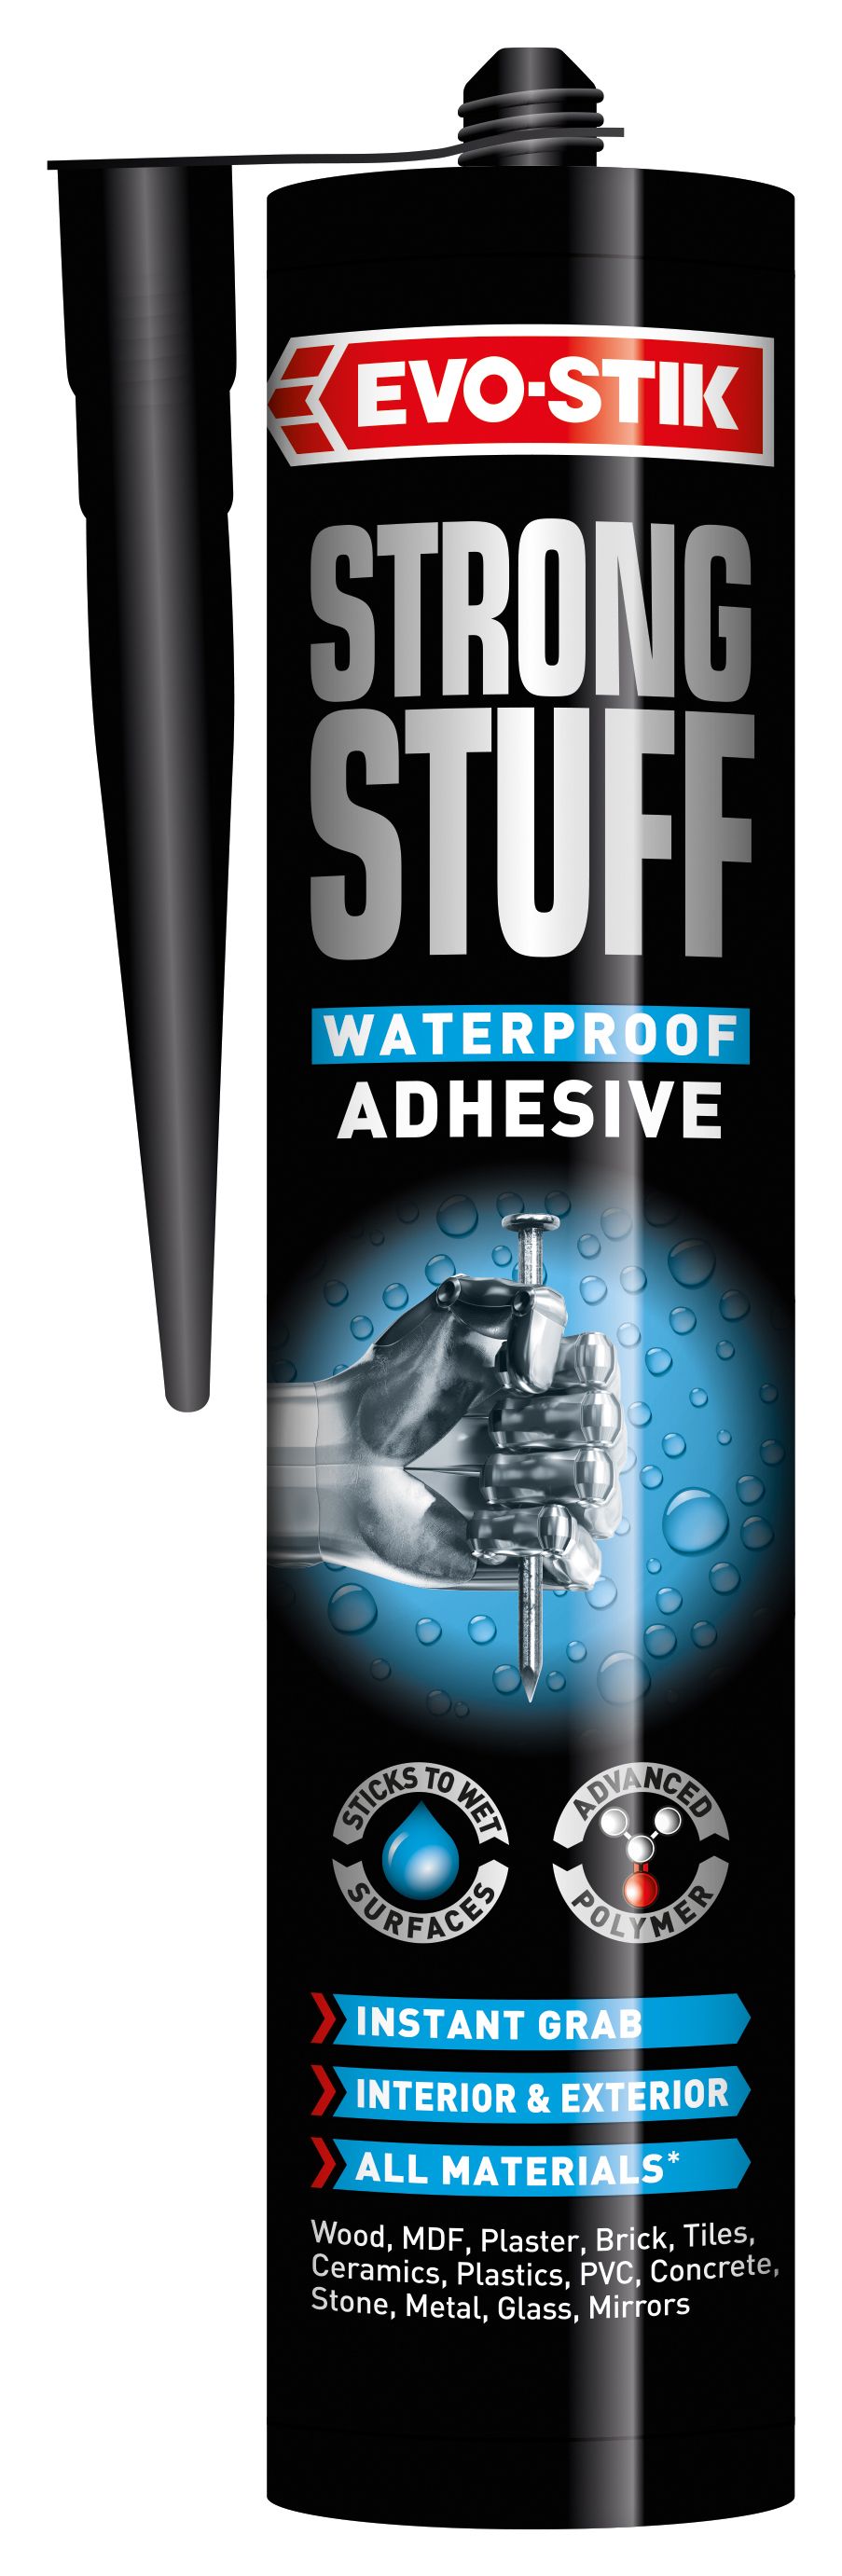 EVO-STIK Seriously Strong Stuff Waterproof Adhesive - 290ml